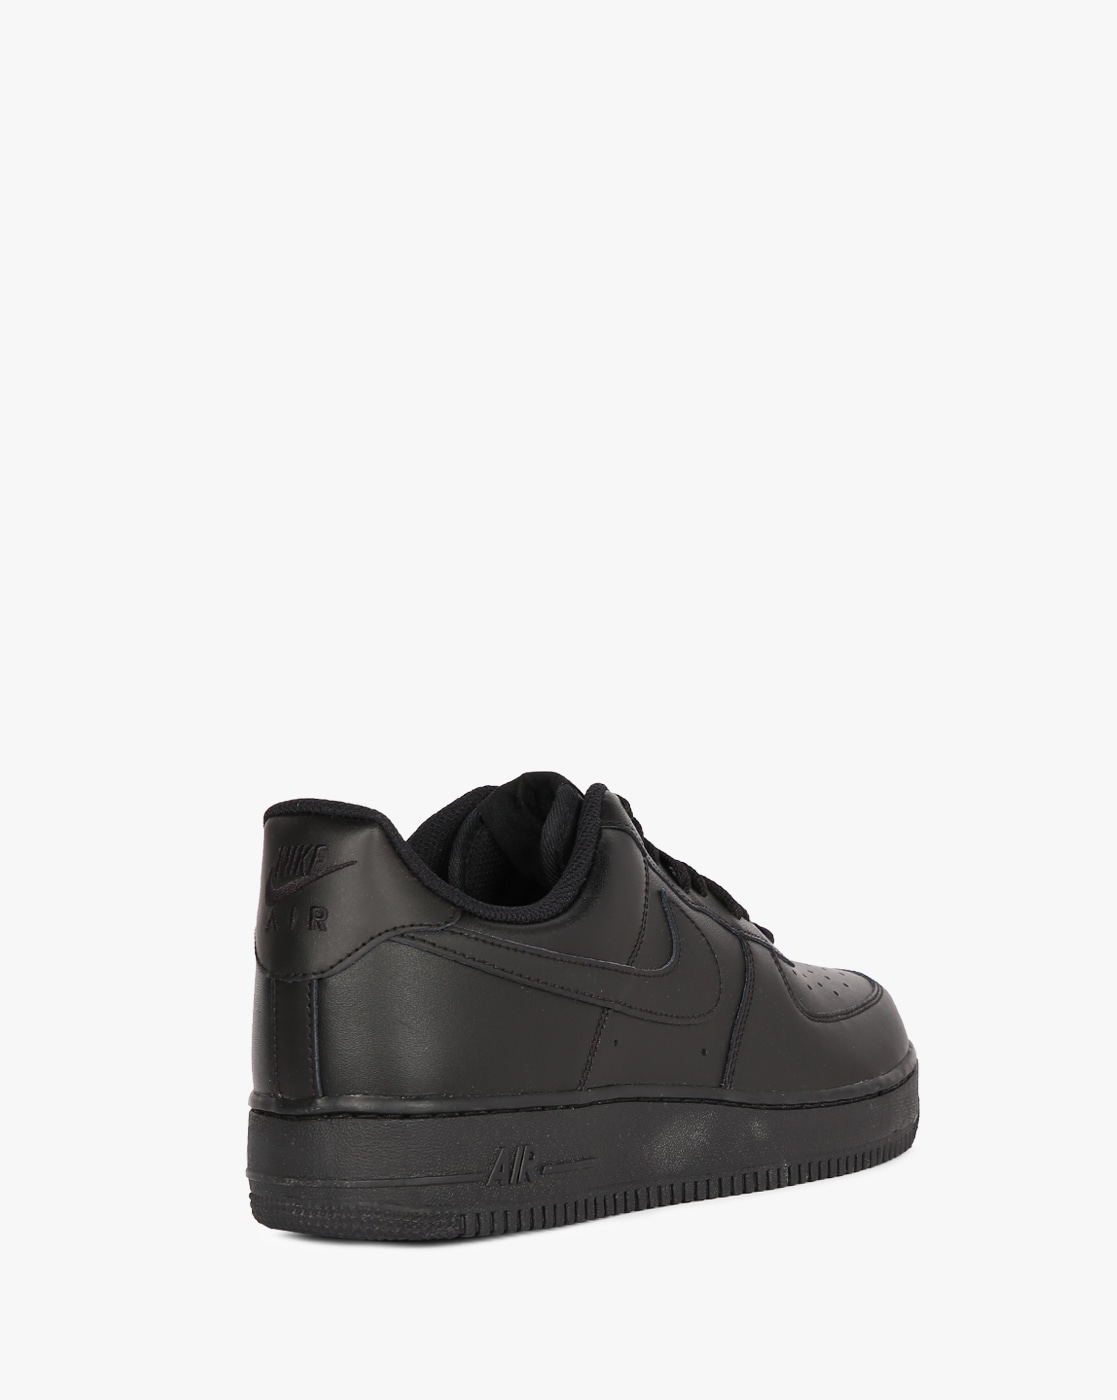 Buy Black Sneakers for Men by NIKE Online